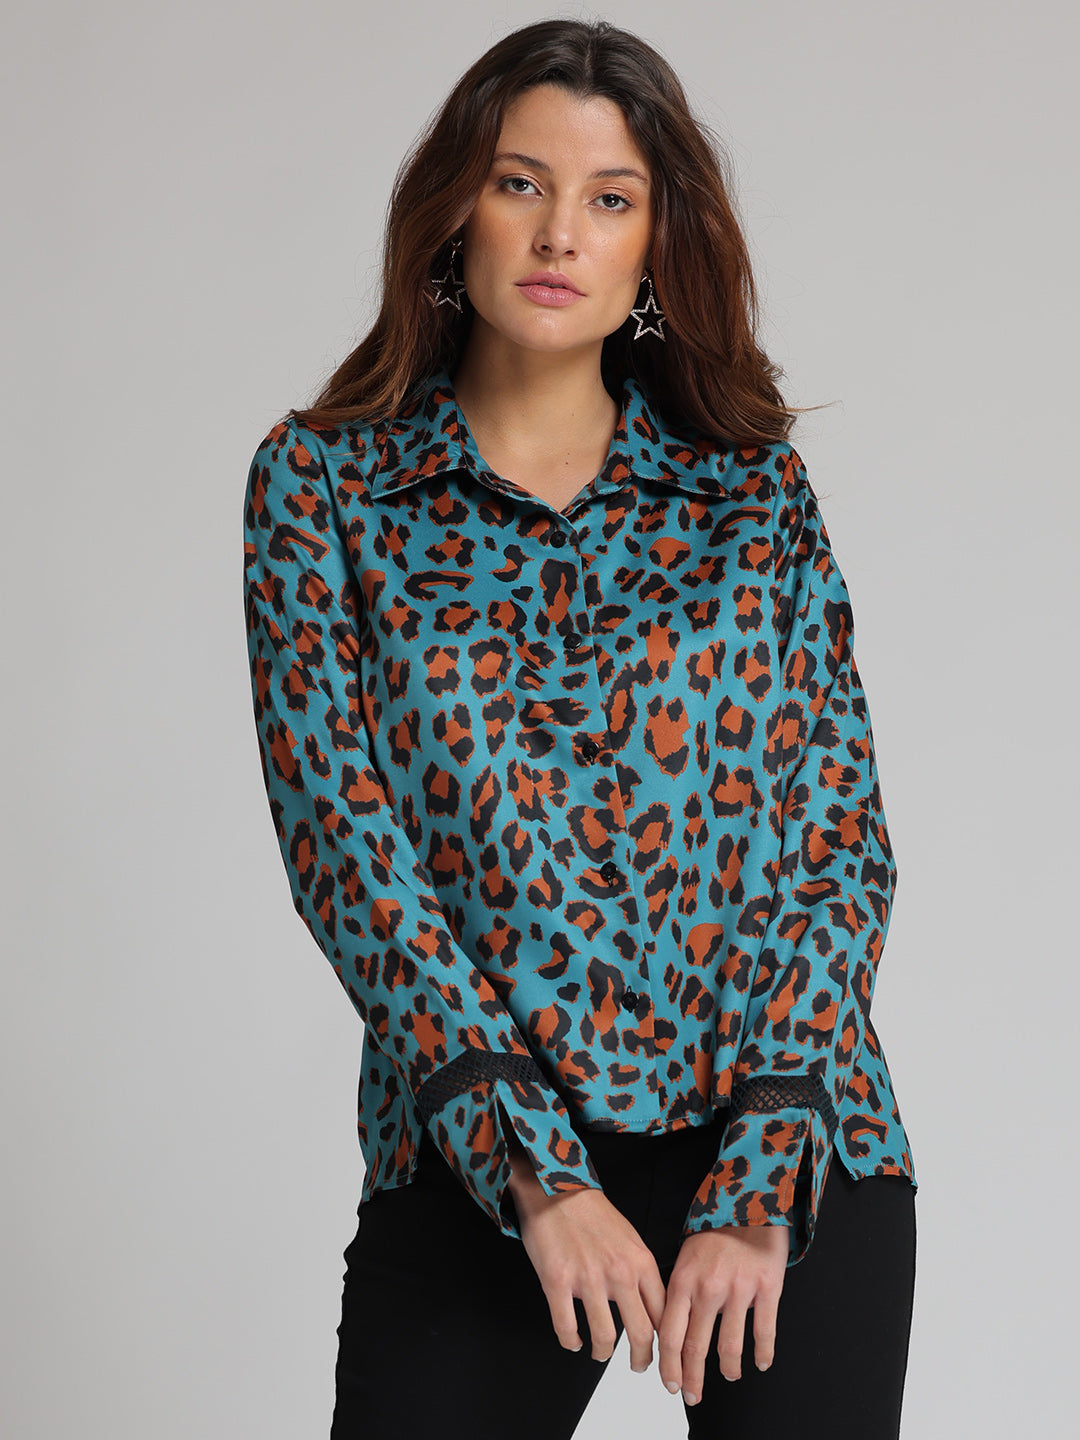 Shop Teal Blue Leopard Print Shirt | Women's Shirts Online - Shaye ...